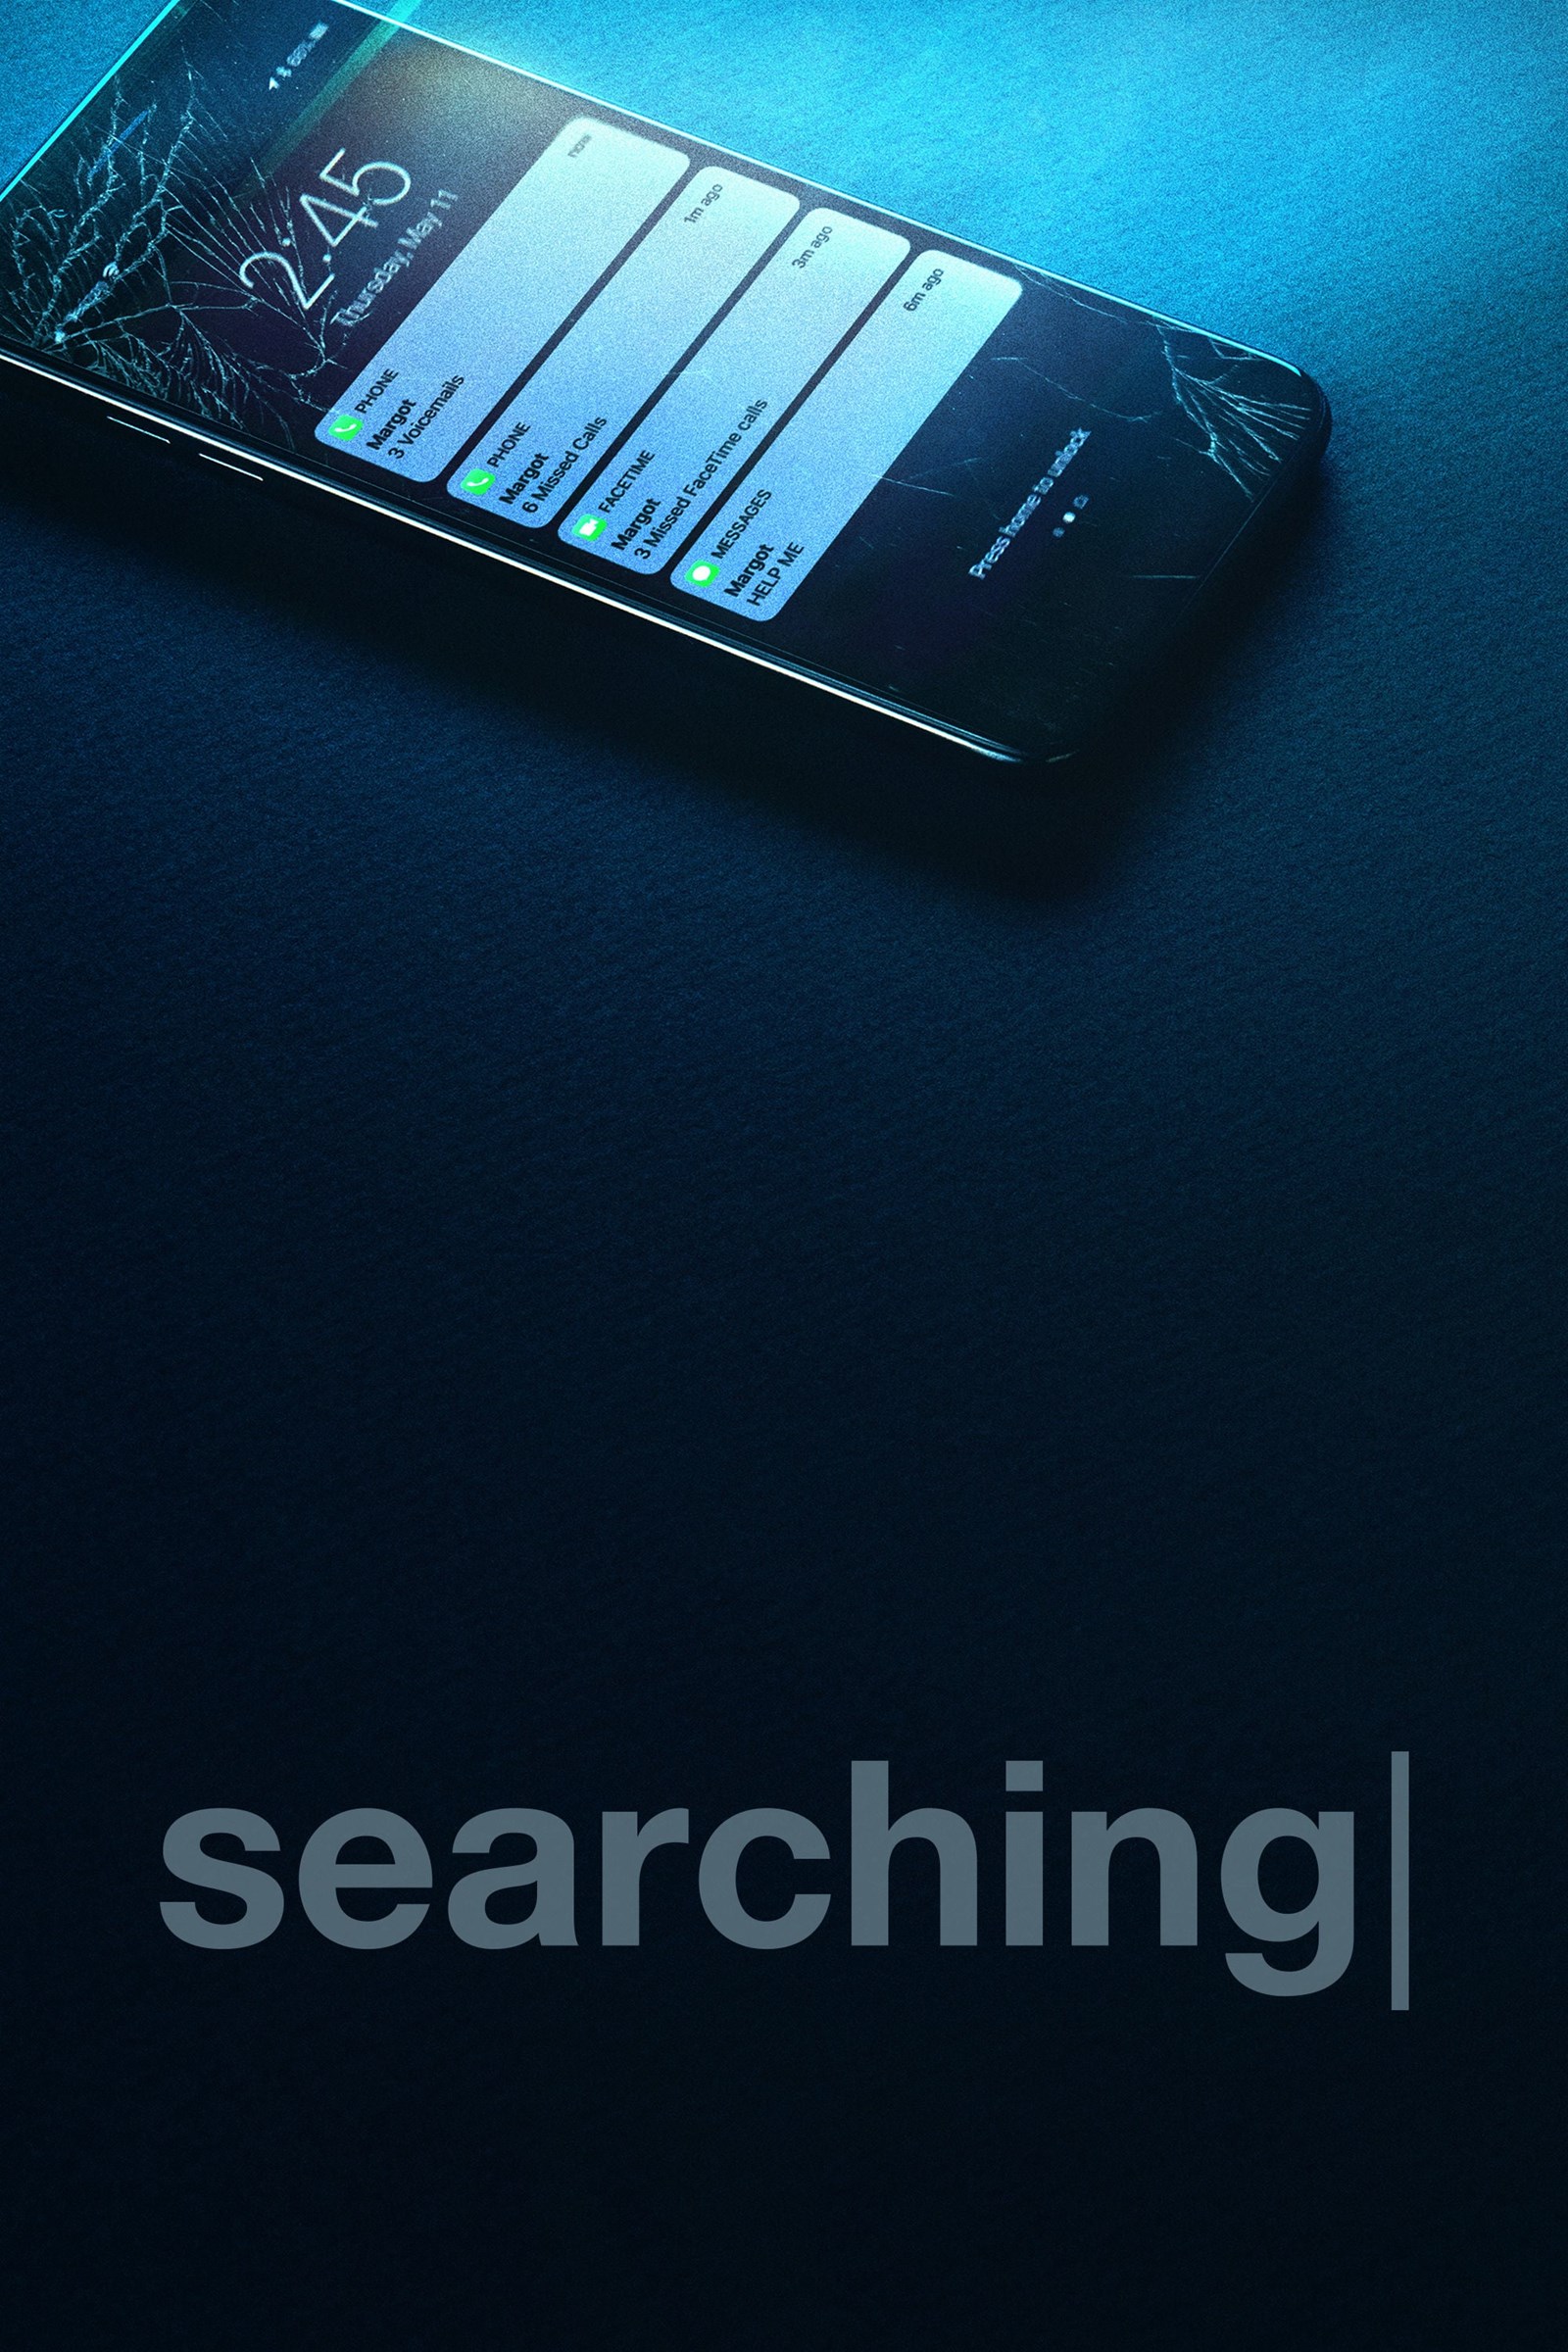 searching.136129.jpg